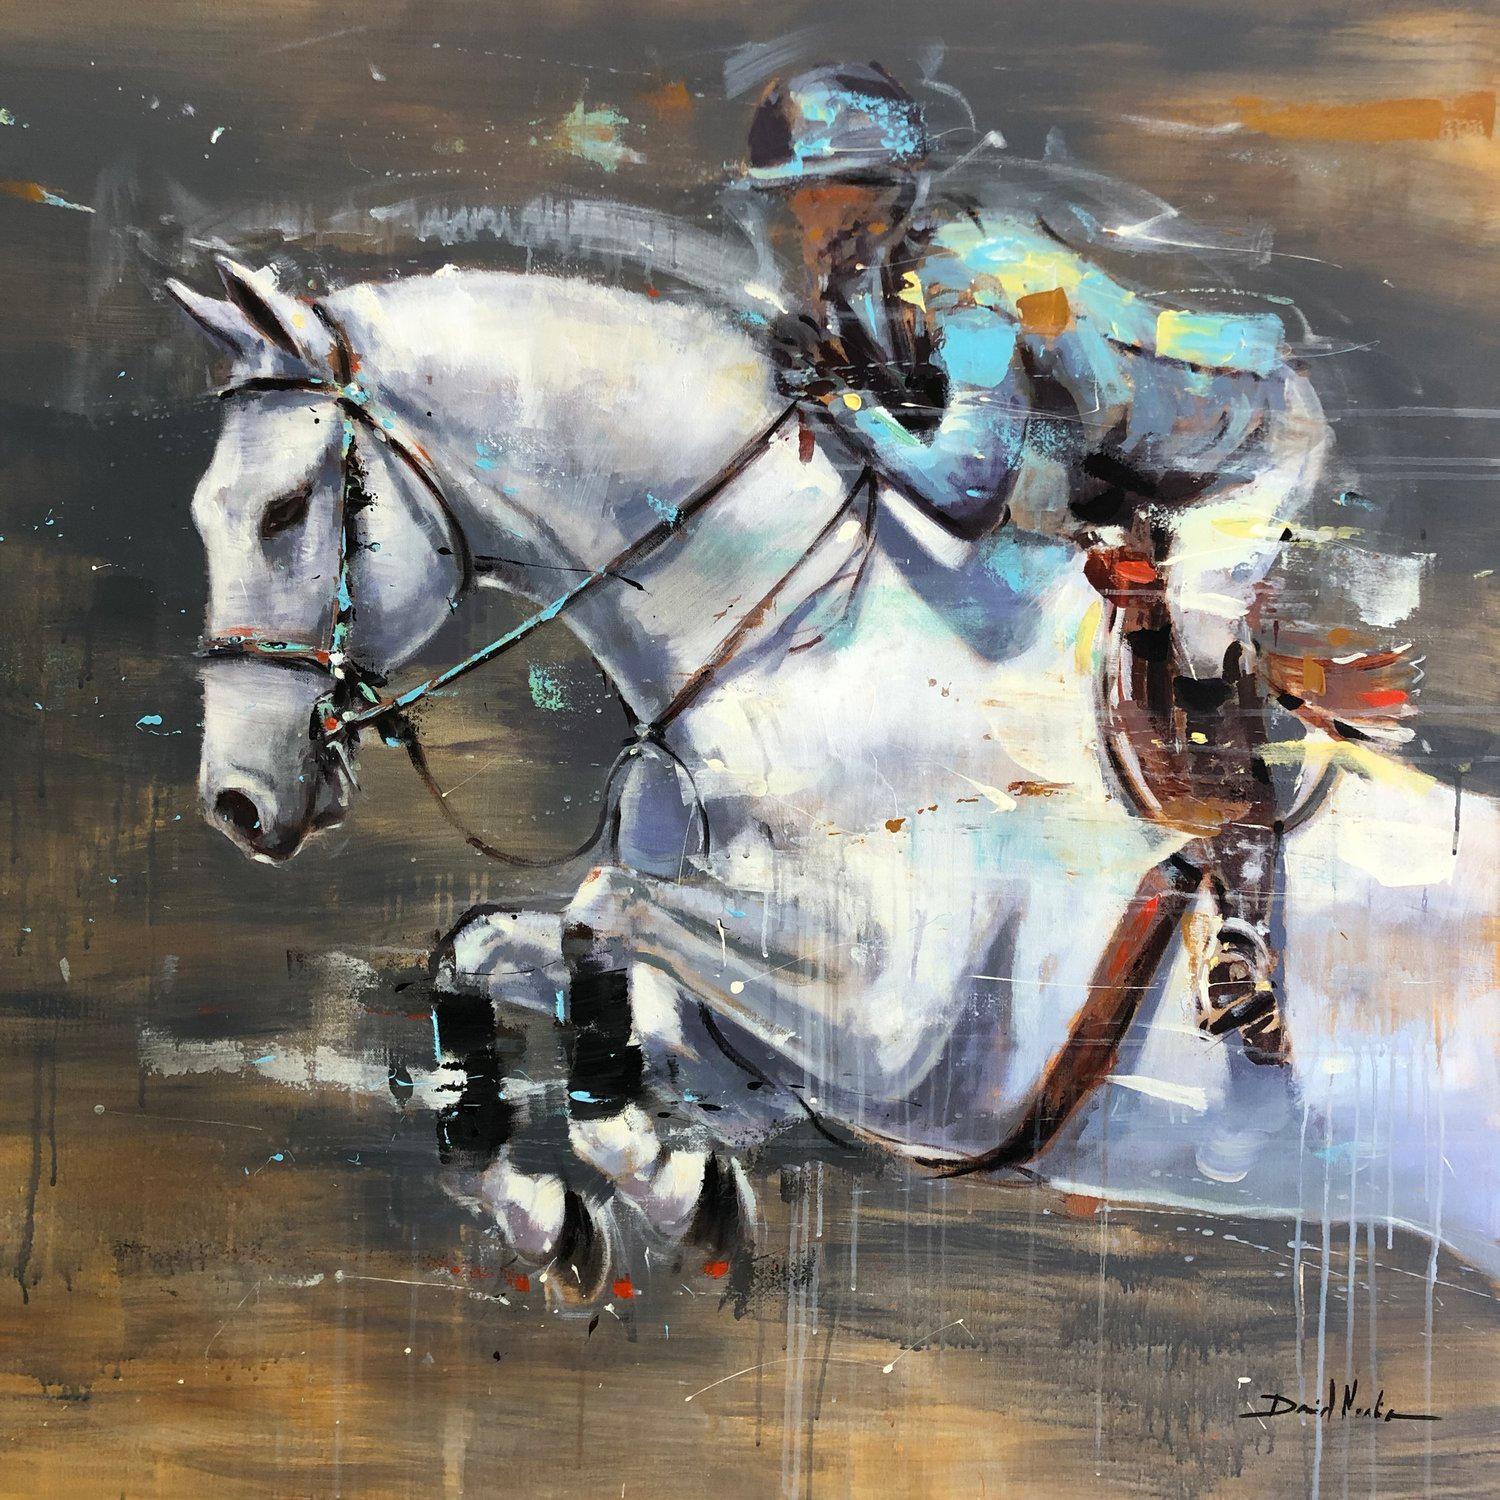 Cette œuvre colorée, "Jumping in White", est une peinture à l'huile équine sur toile de 40x40 représentant un cheval blanc à mi-saut lors d'une compétition de saut d'obstacles. Des roses, des violets et des bleus éclatants dansent autour des